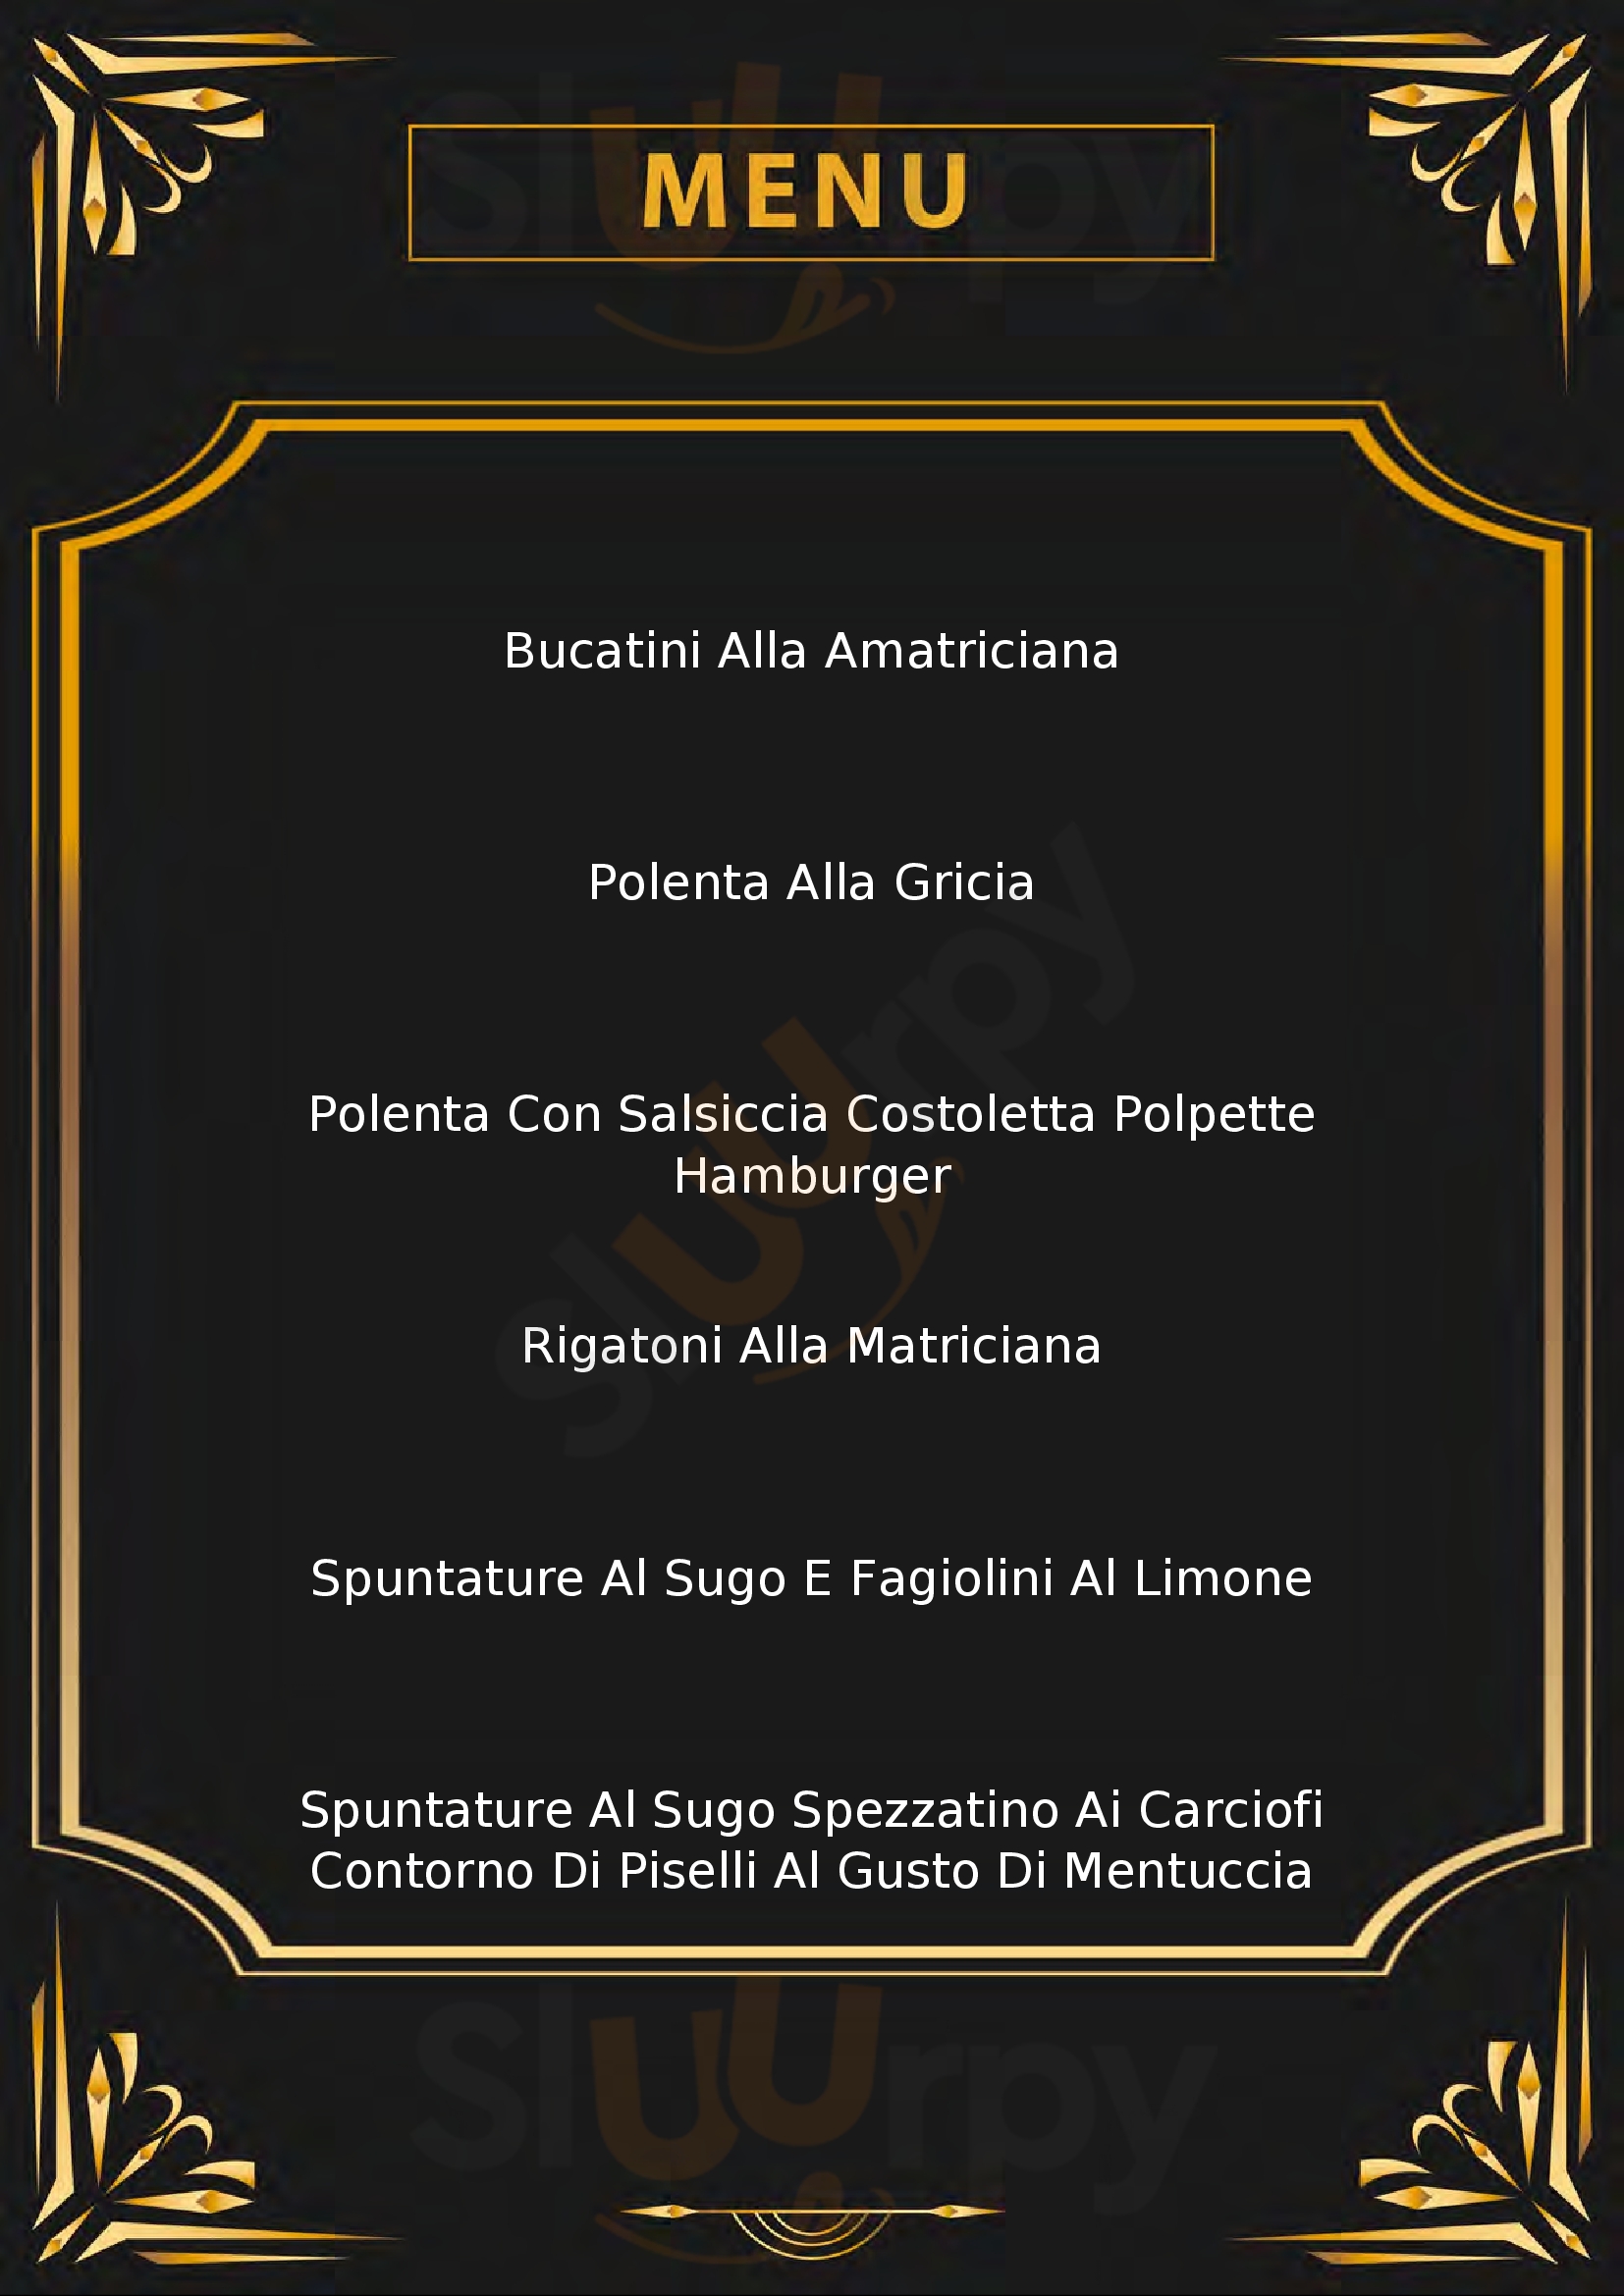 Spaghetteria Sapori Antichi Roma menù 1 pagina